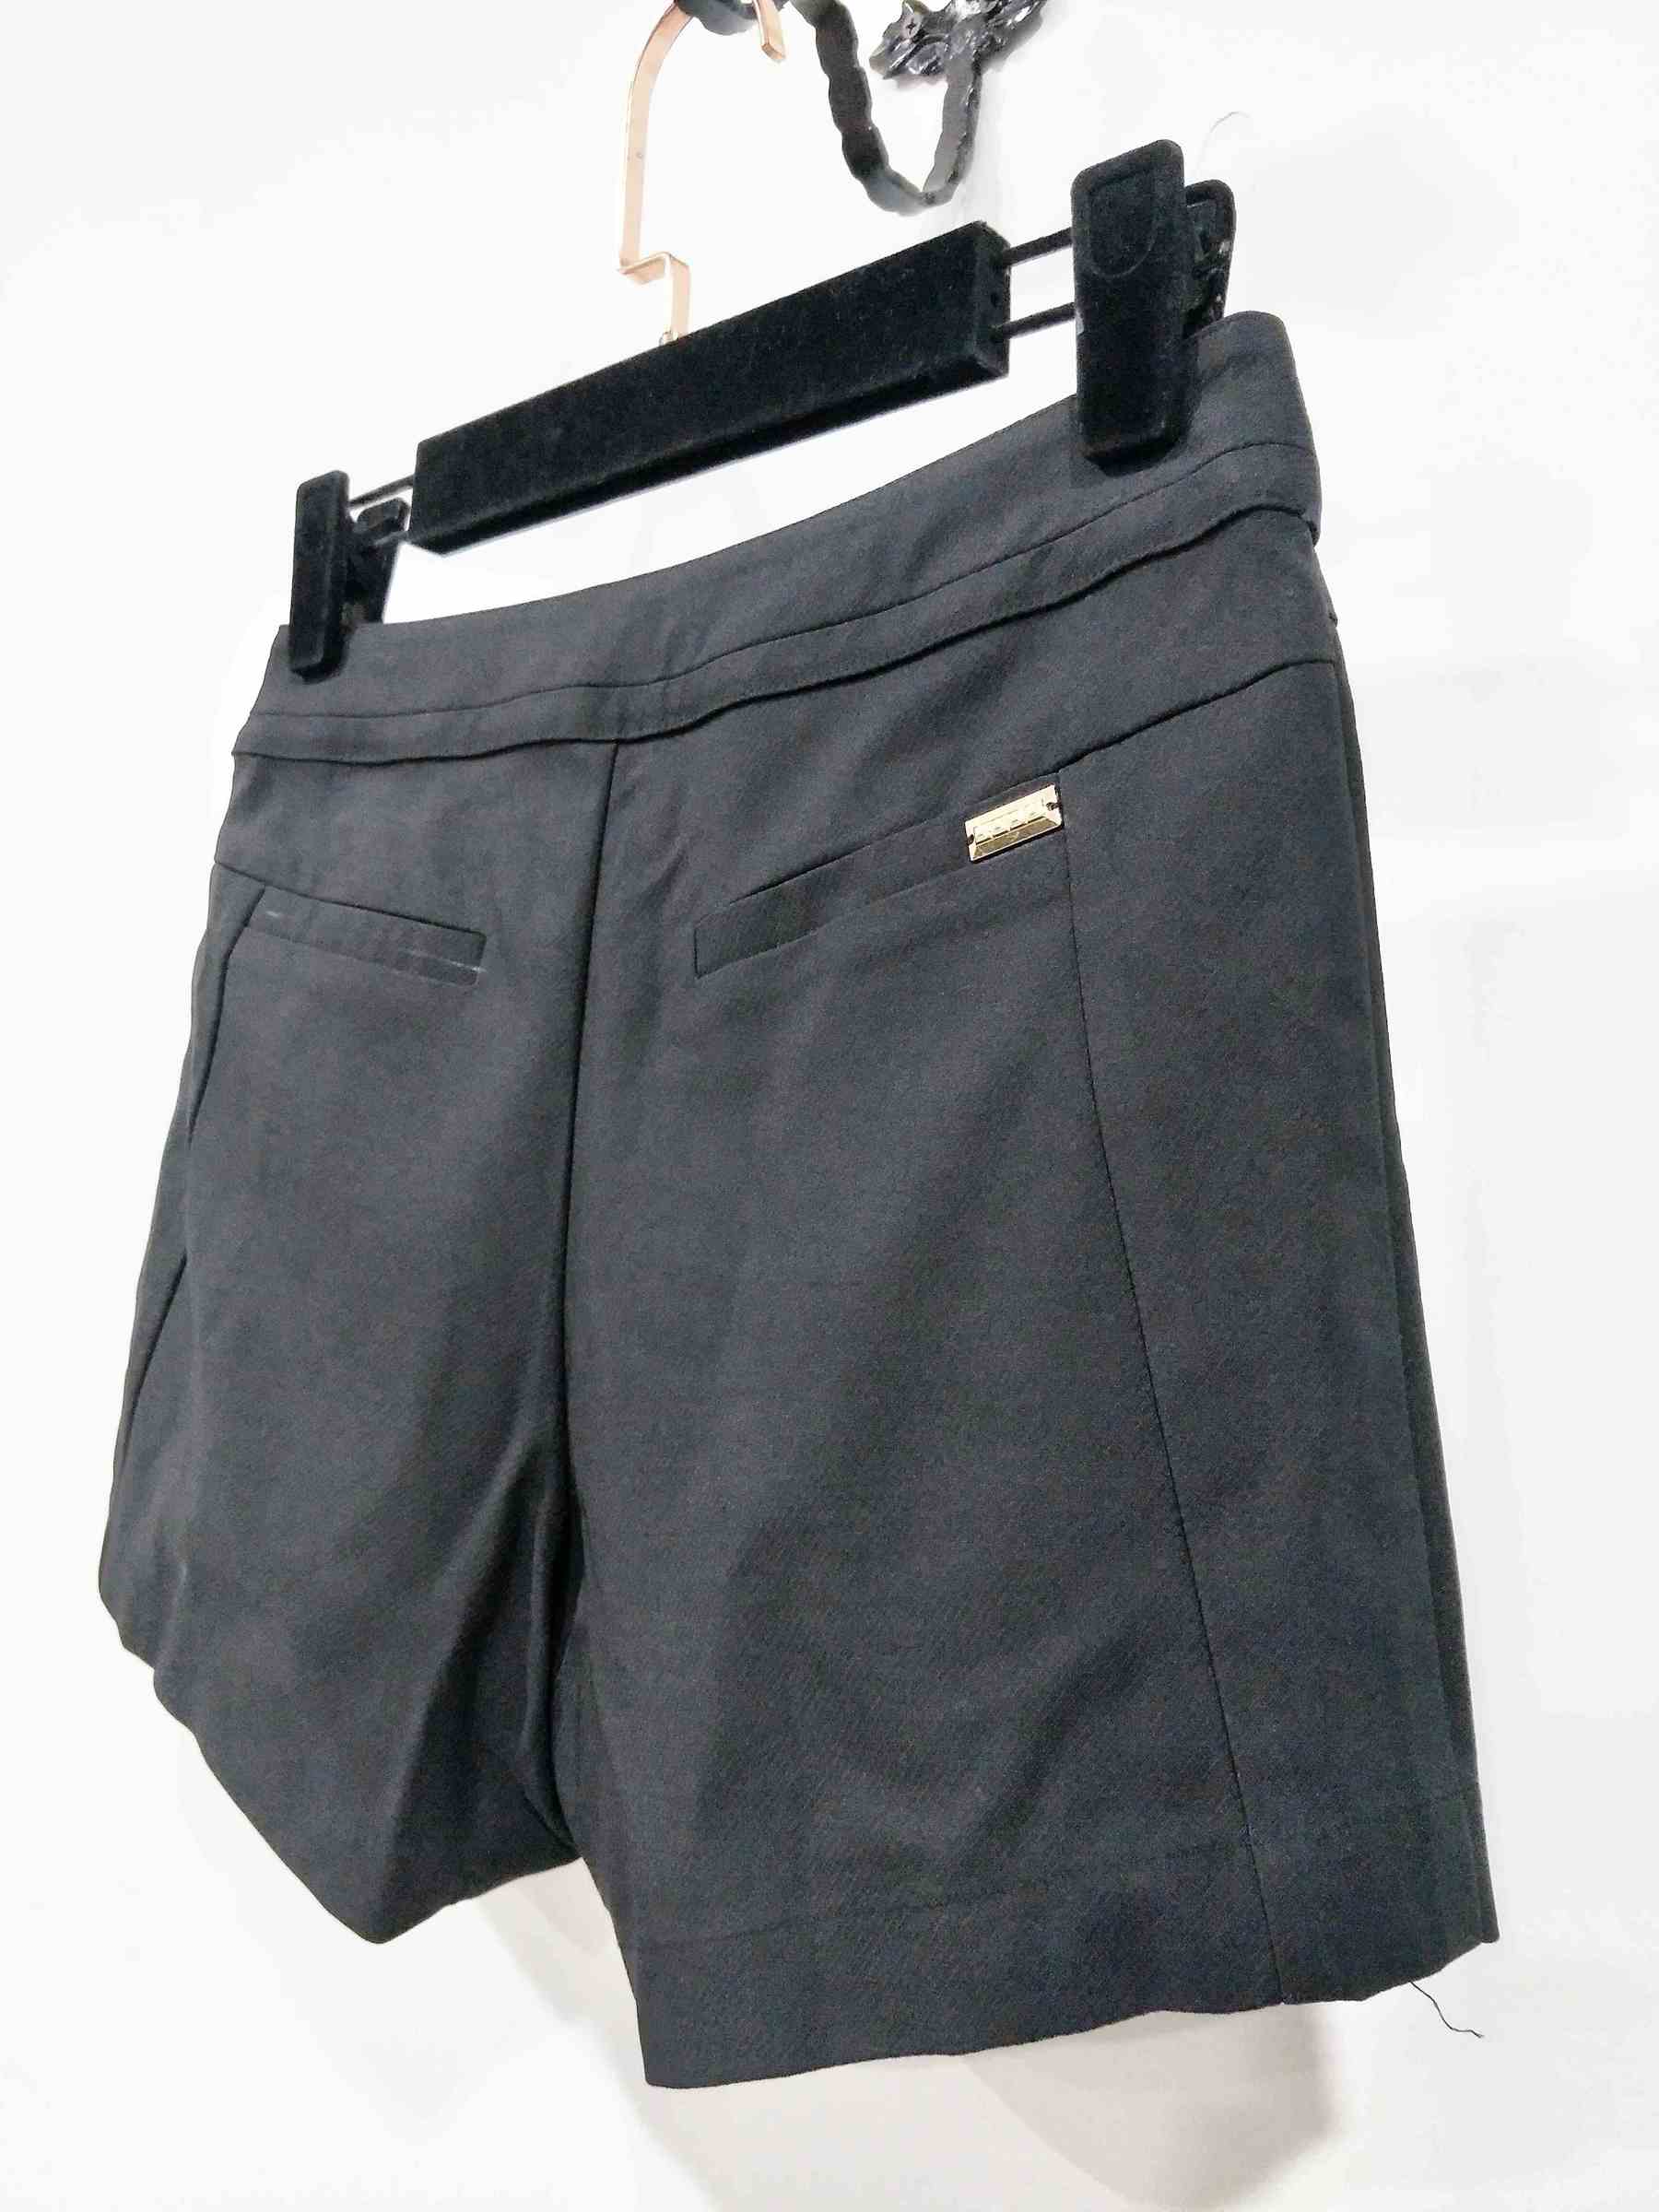 A62185-黑色斜紋氣質短褲-女裝代工 (7).jpg